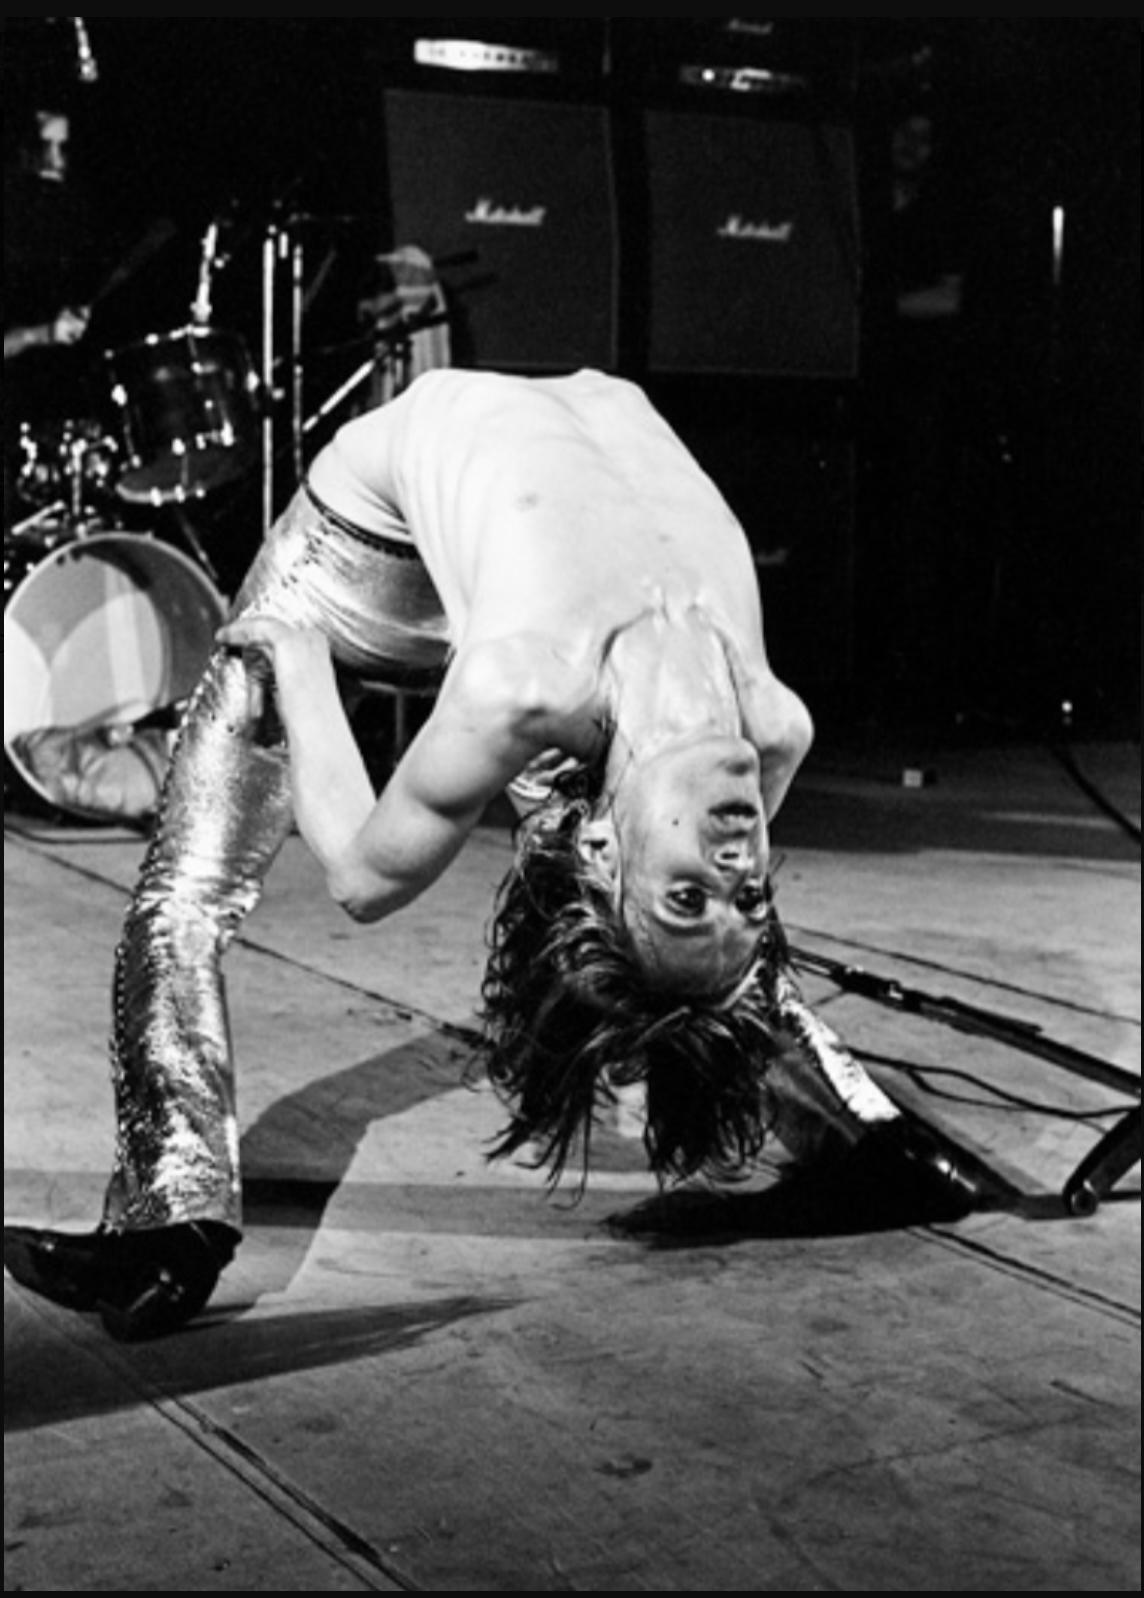 "Iggy Backbend, Londres, 1972" Photographie 24 x 20 pouces 29/50 de Mick Rock

Edition : 29/50
Support : Épreuve photographique à la gélatine d'argent en édition limitée sur papier

Iggy et les Stooges ont eu une grande influence sur le